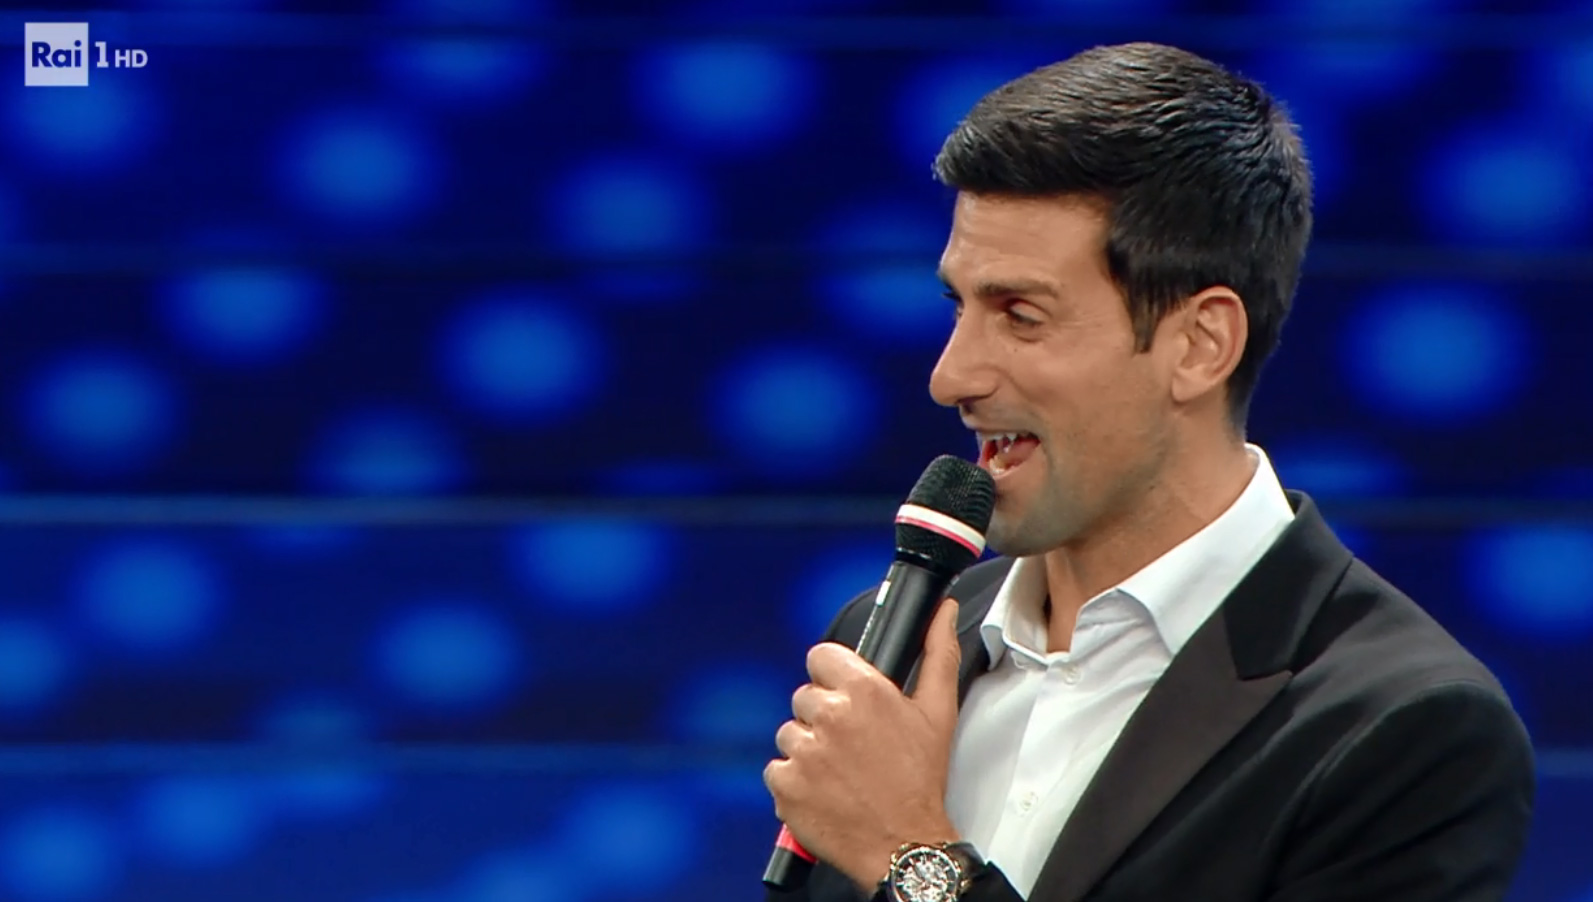 Novak Đoković canta assieme con Fiorello il ritornello di 'Terra Promessa' a Sanremo 2020